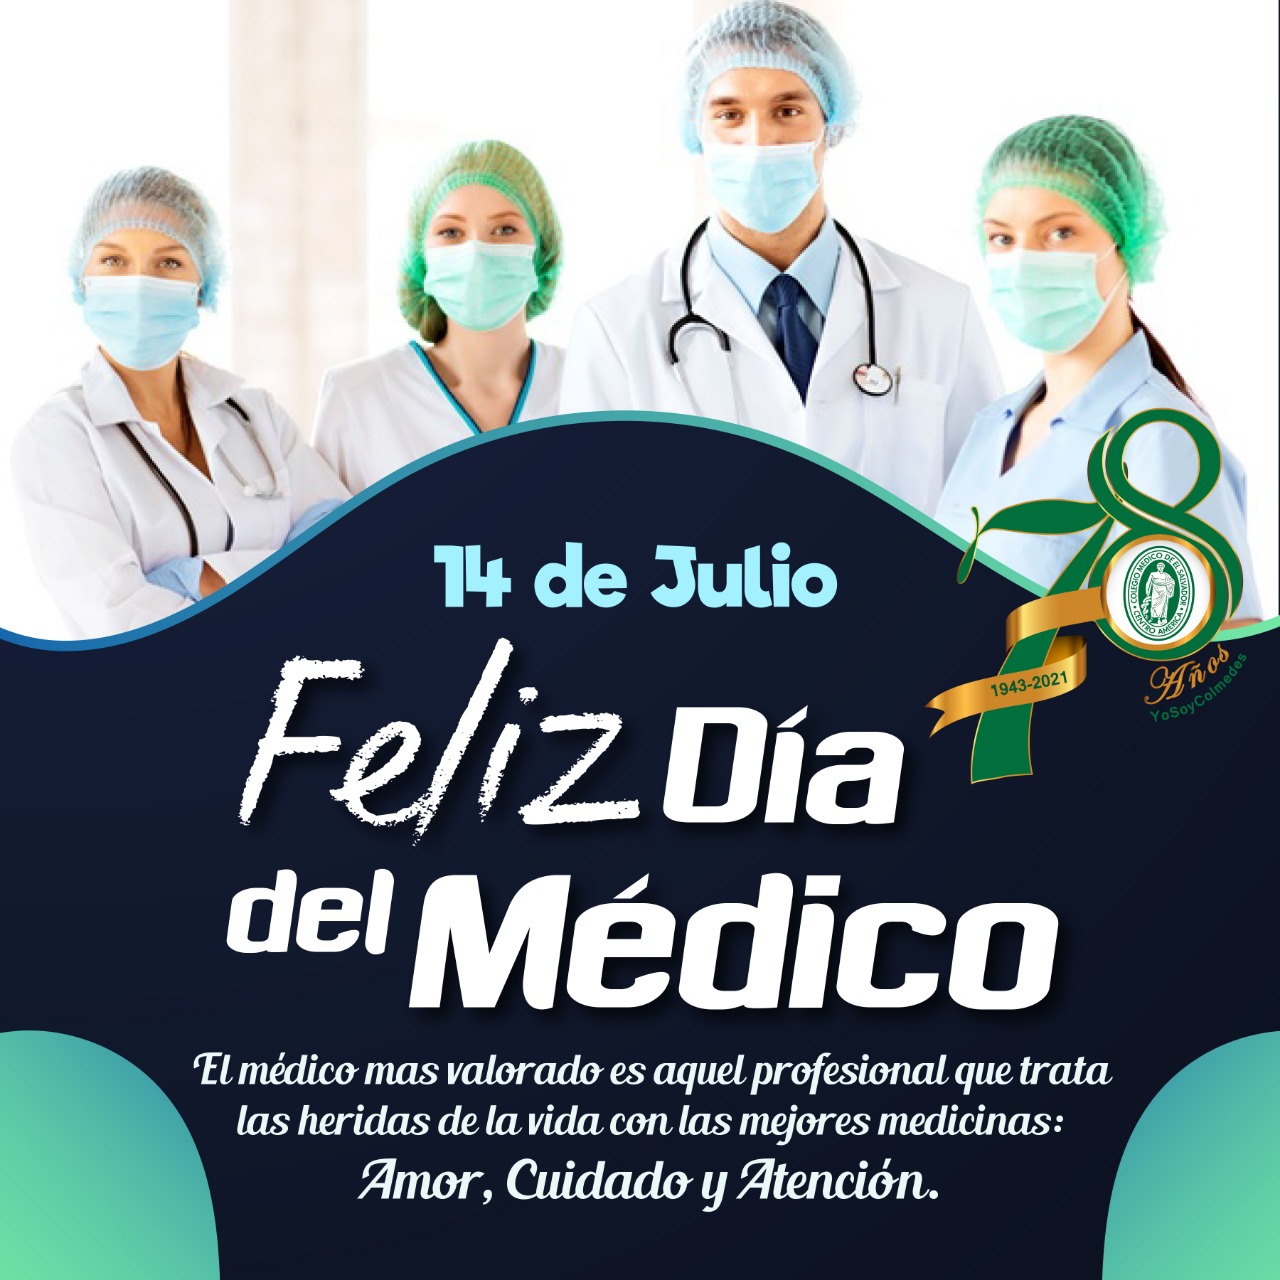 FELIZ DIA DEL MEDICO!!! Colegio Médico de El Salvador